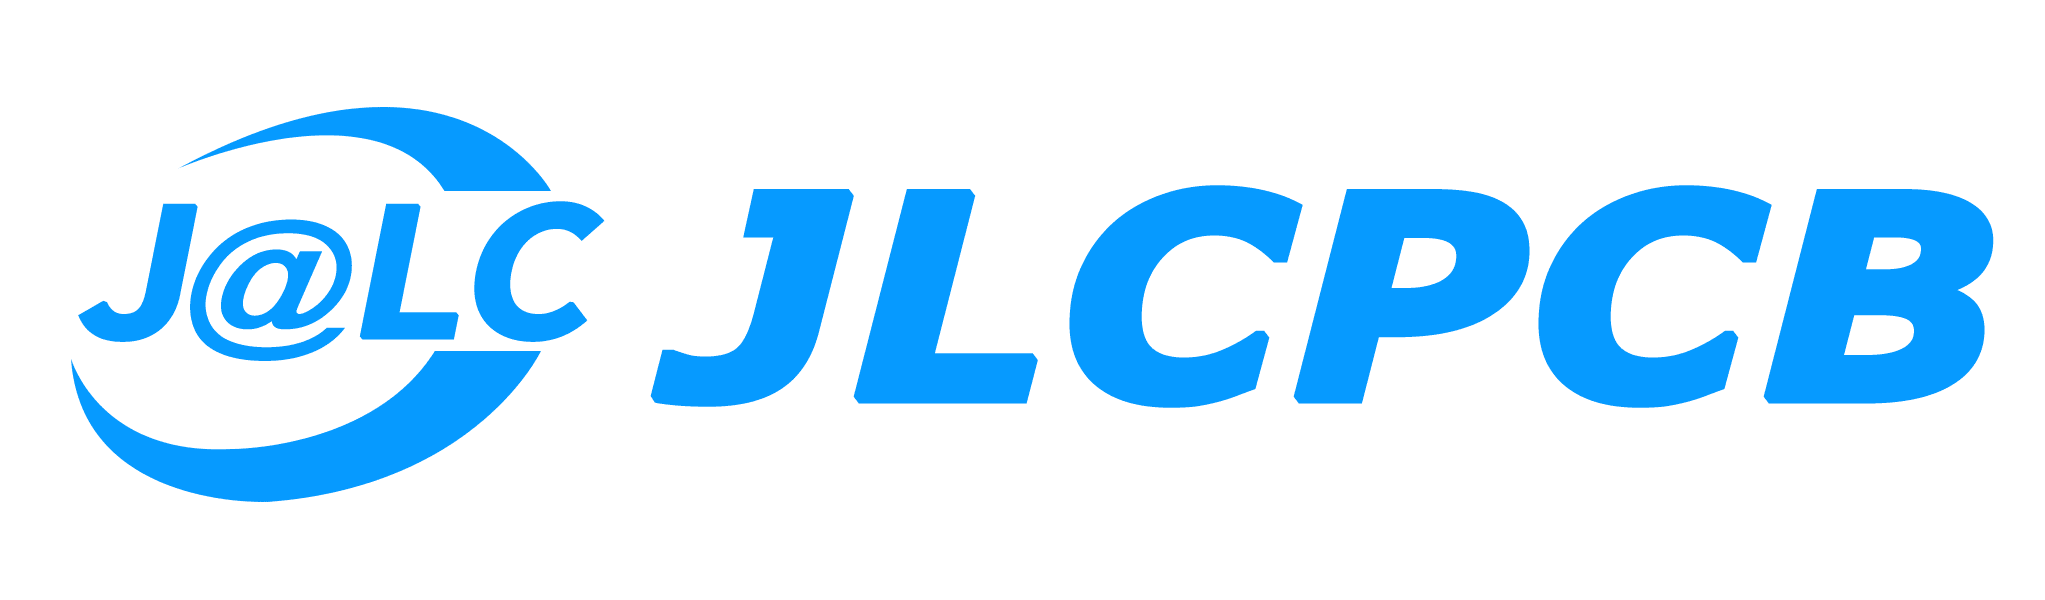 jlc pcb logo